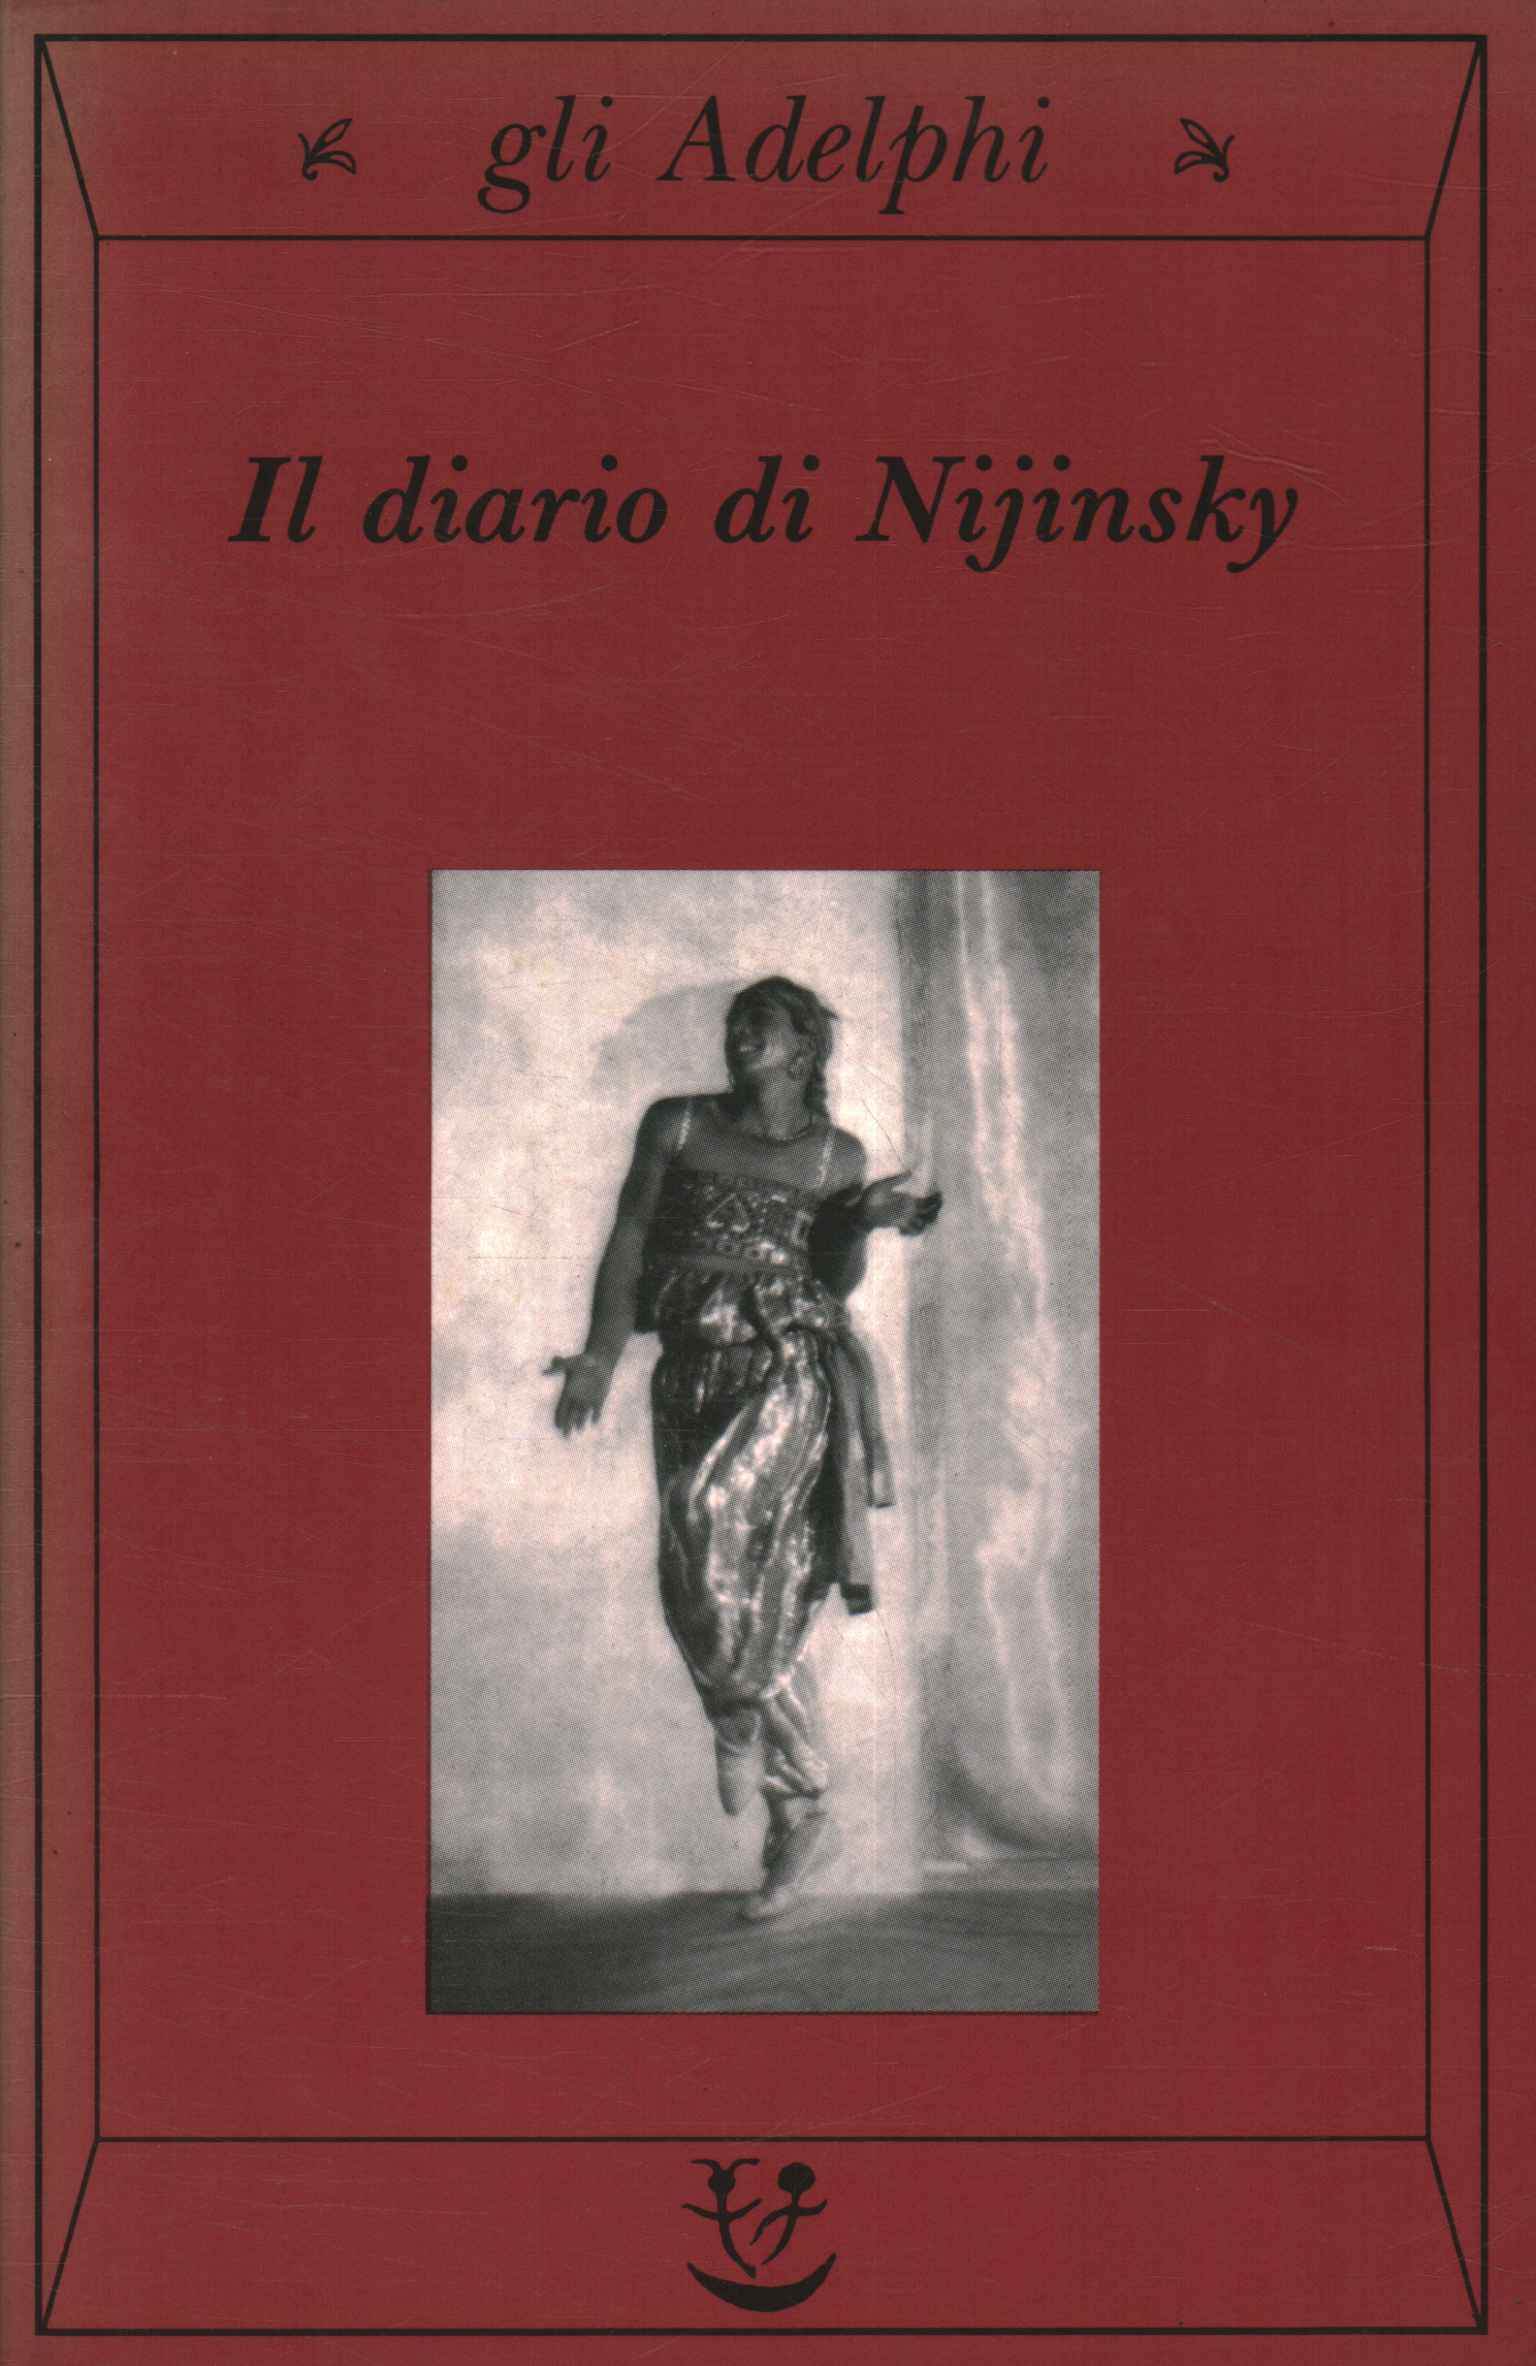 Nijinsky's diary